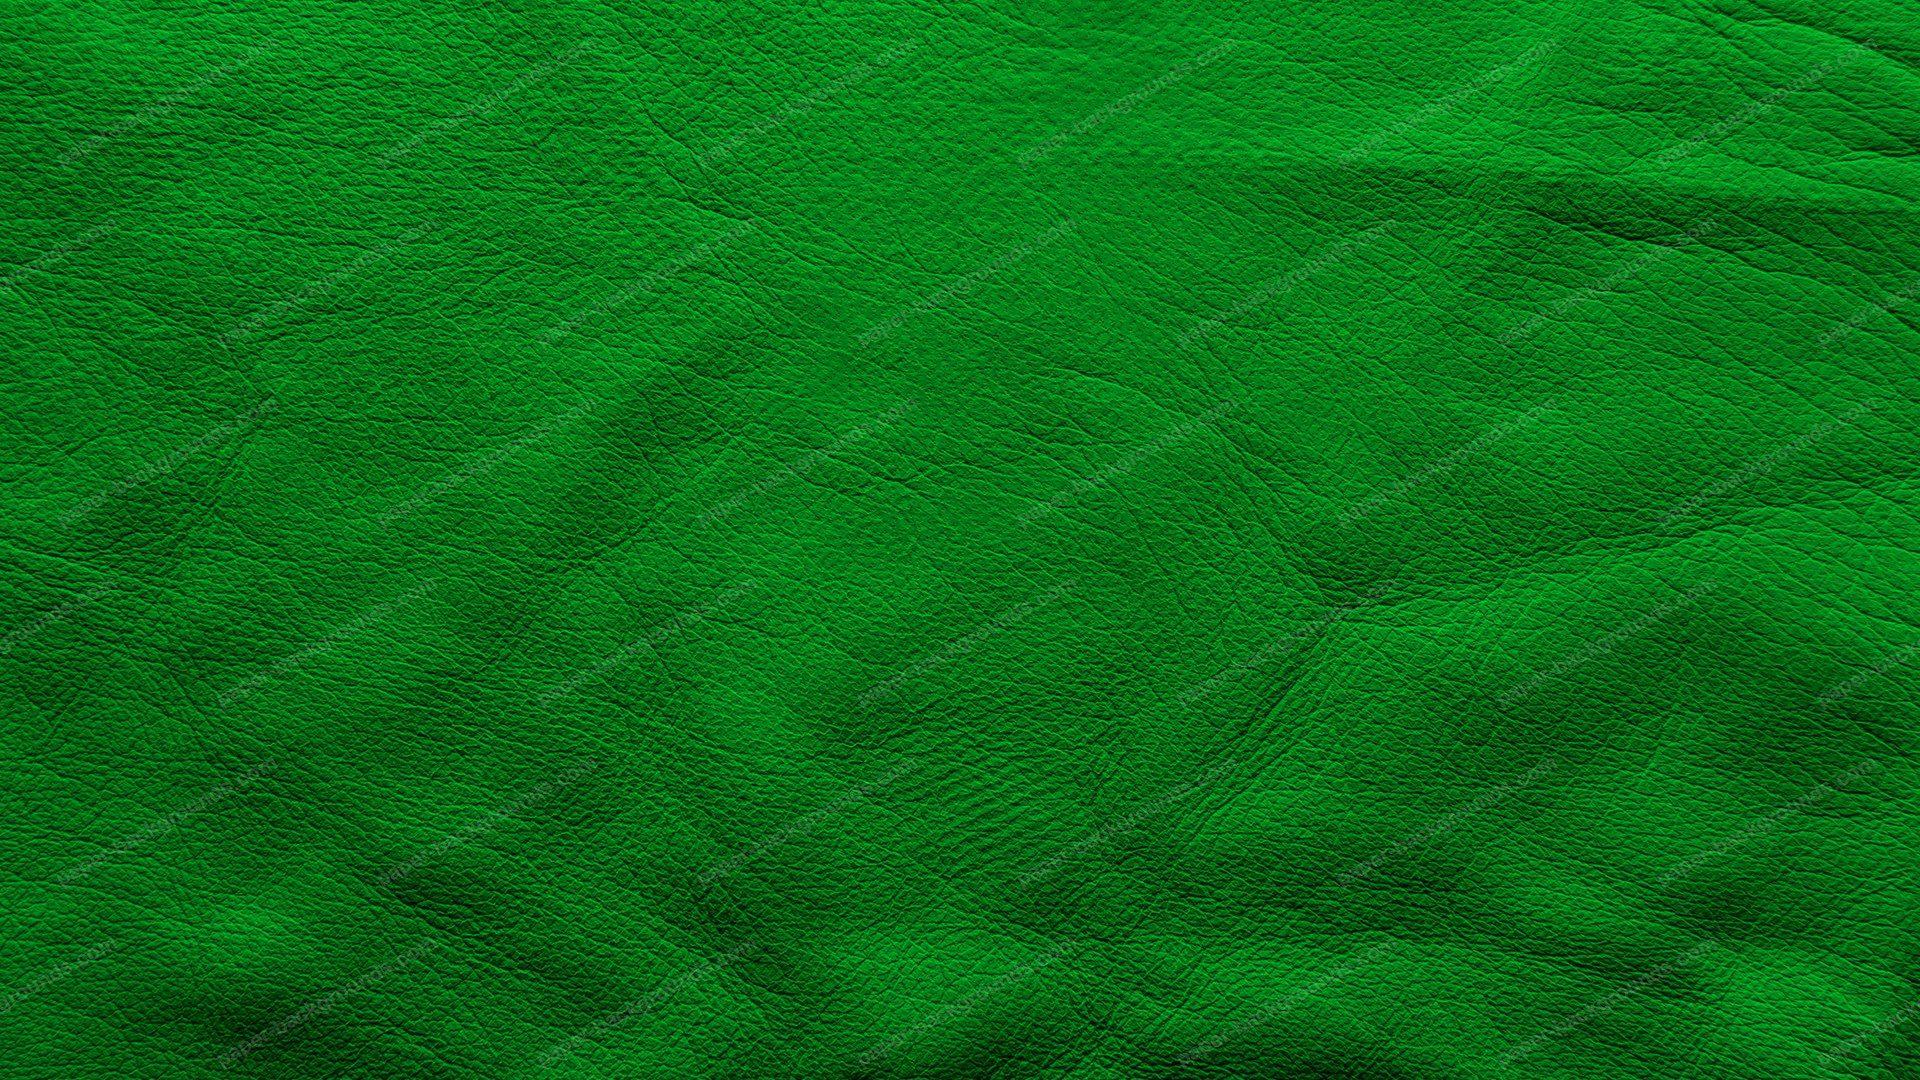 dark green textured background